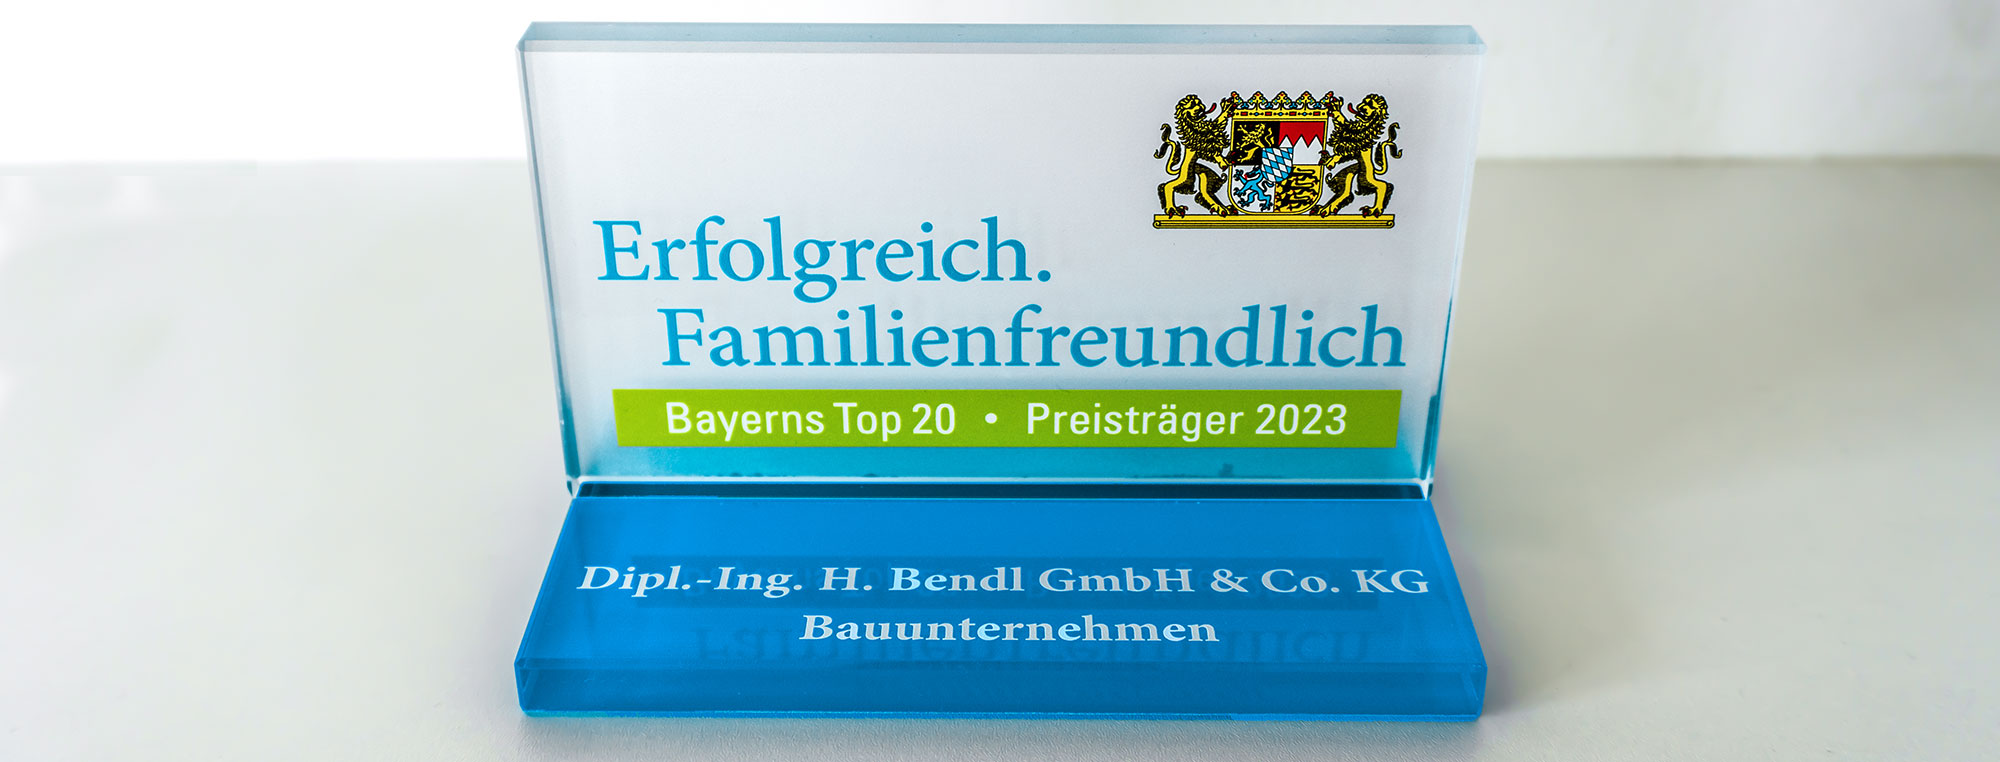 Bauunternehmen bendl gehört zu den Top 20 familienfreundlicher Unternehmen in Bayern - Preisträger 2023